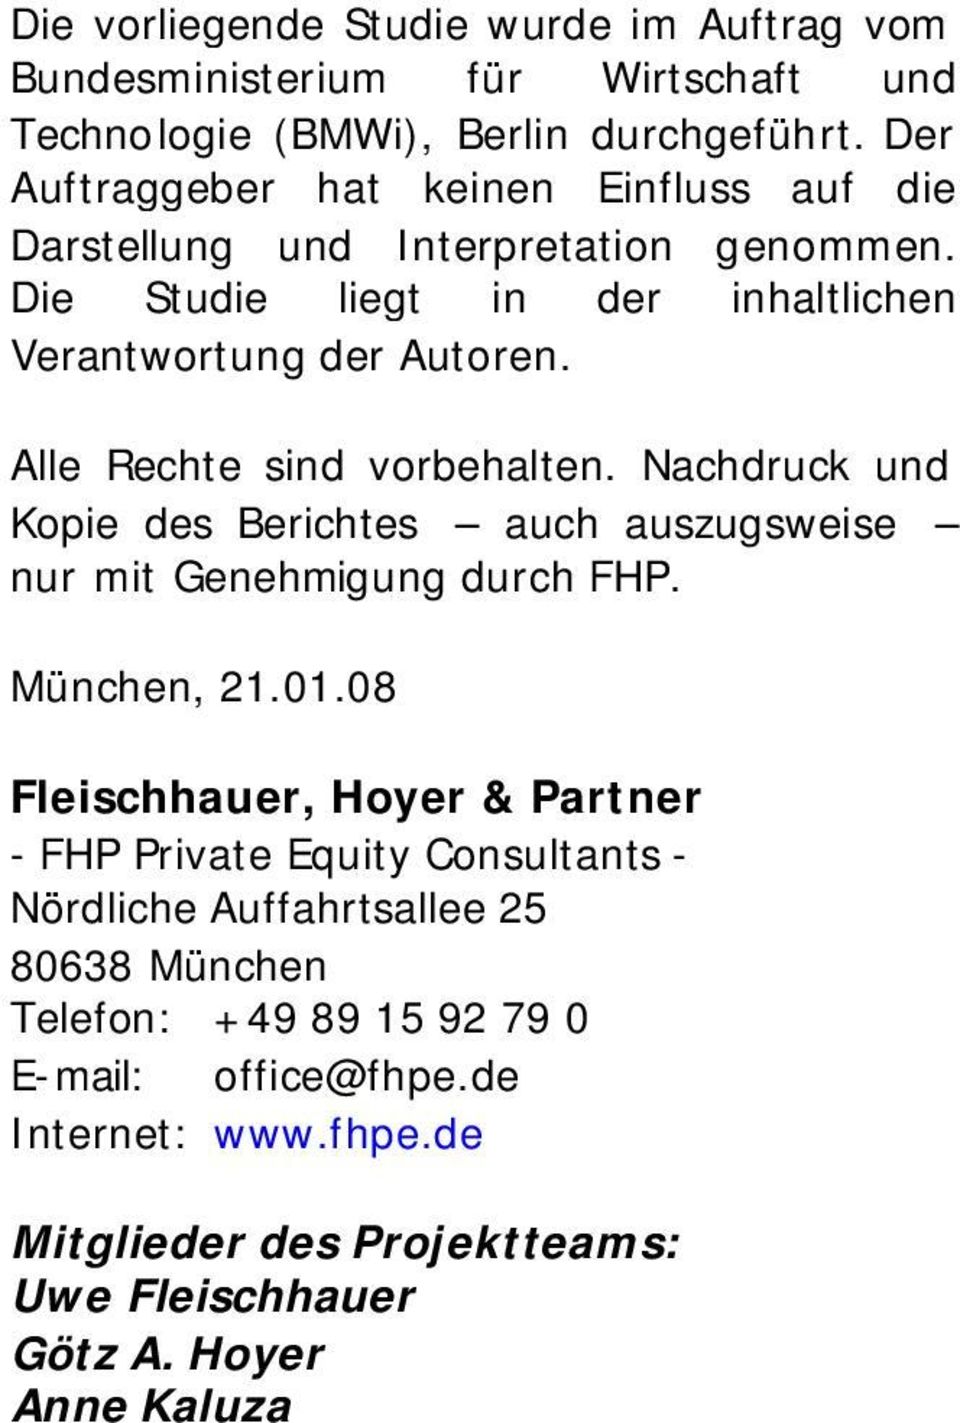 Alle Rechte sind vorbehalten. Nachdruck und Kopie des Berichtes auch auszugsweise nur mit Genehmigung durch FHP. München, 21.01.